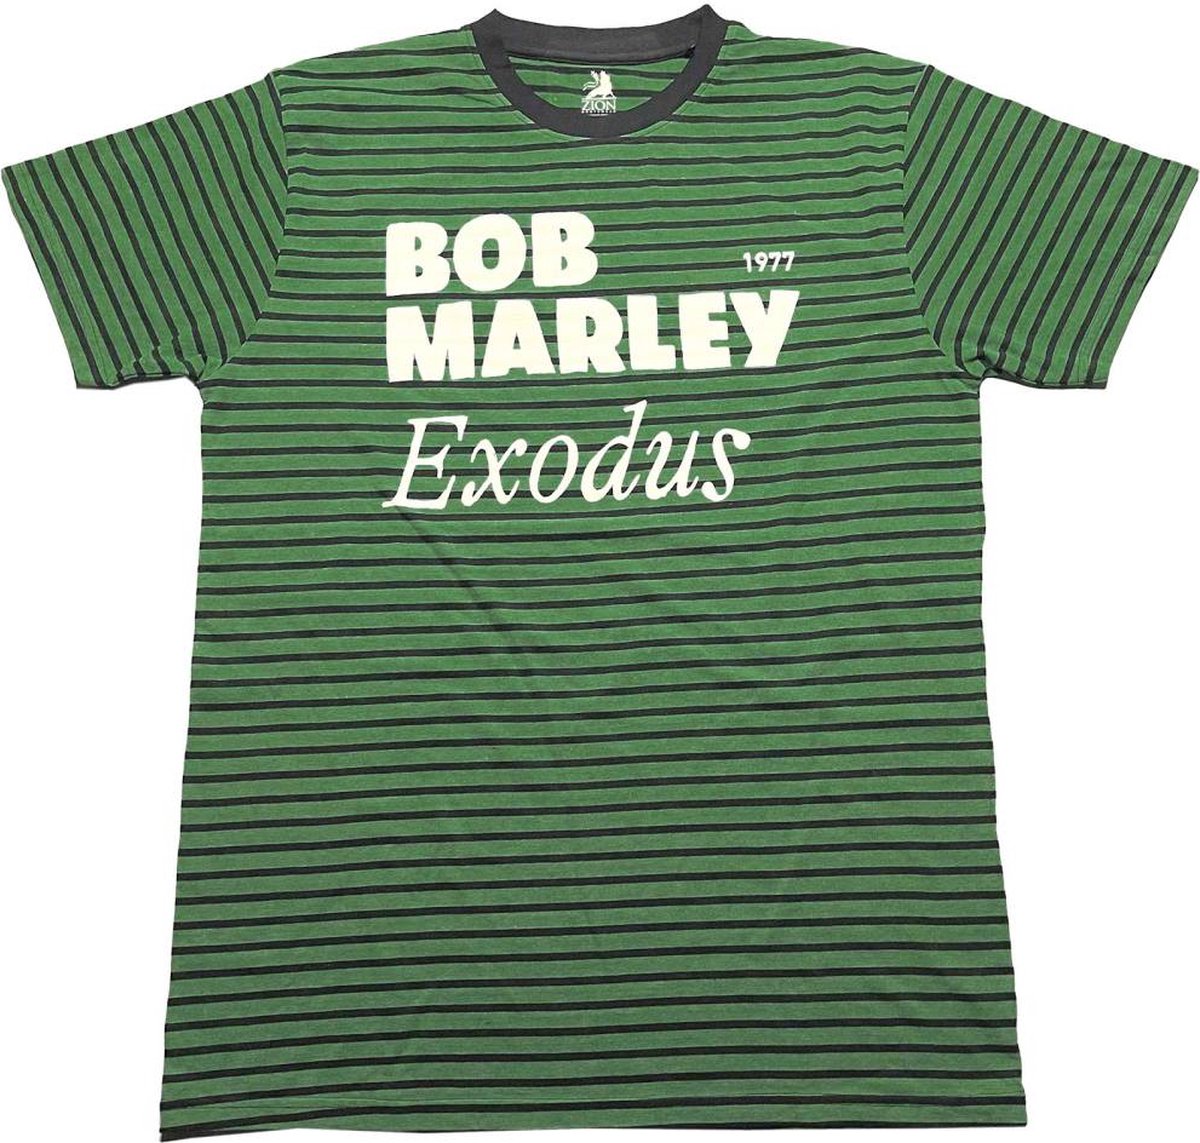 Bob Marley - Exodus Heren T-shirt - M - Groen